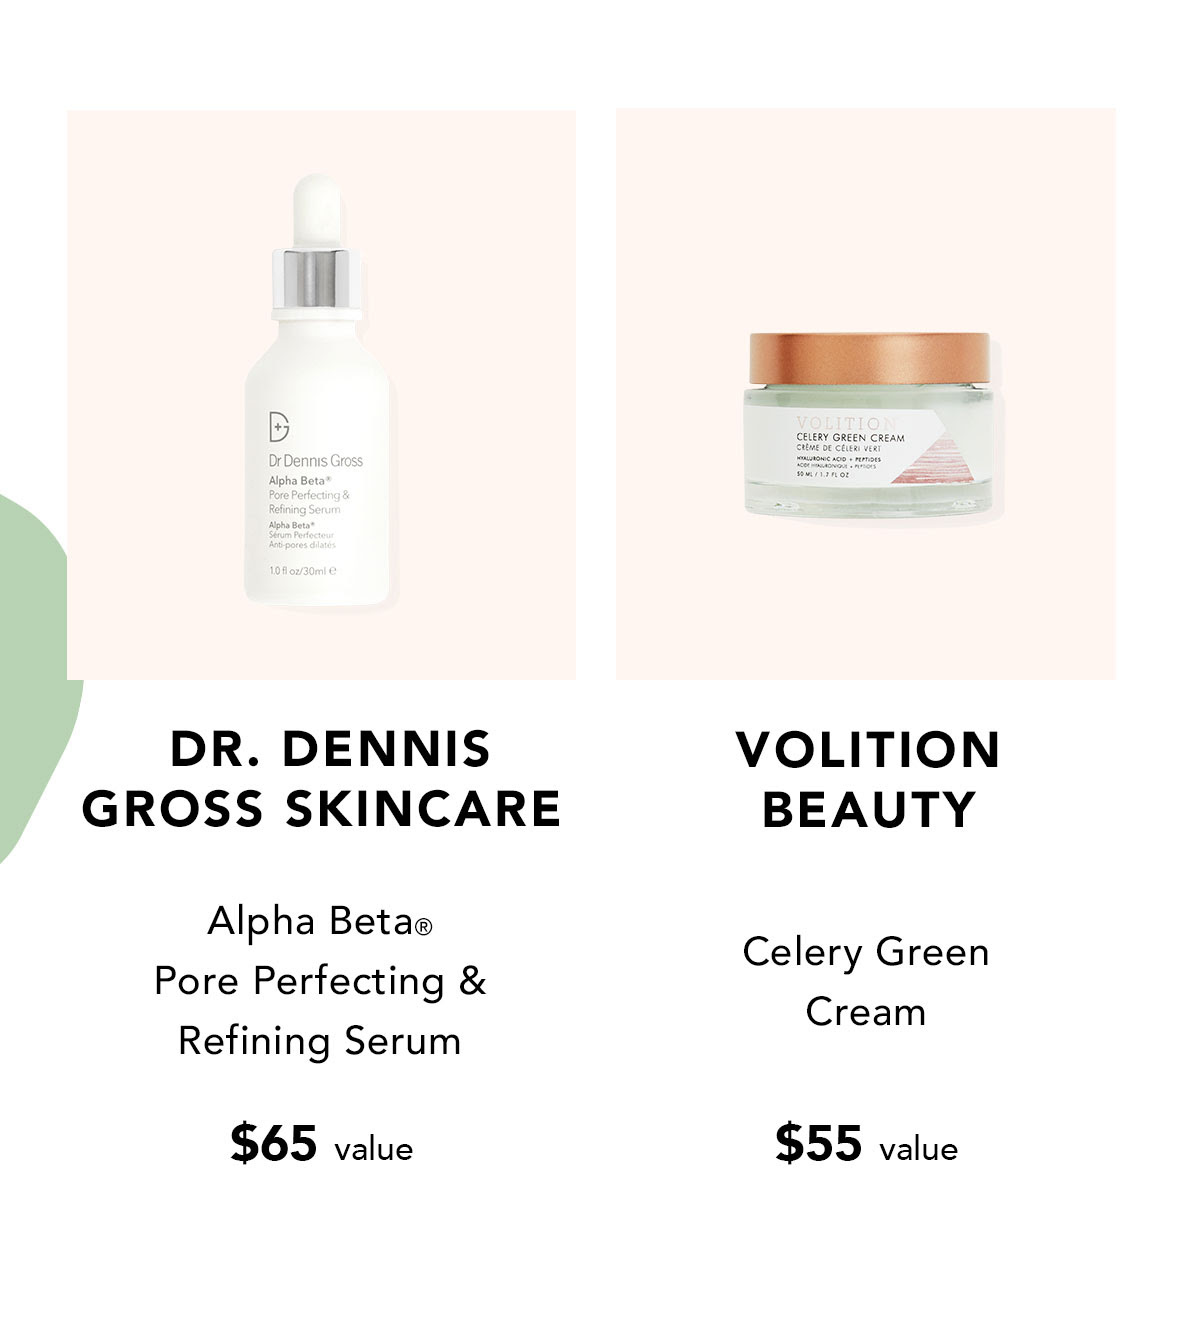 Dr. Dennis Gross Skincare Alpha Beta® Pore Perfecting & Refining Serum $65 value | Volition Beauty Celery Green Cream $55 value